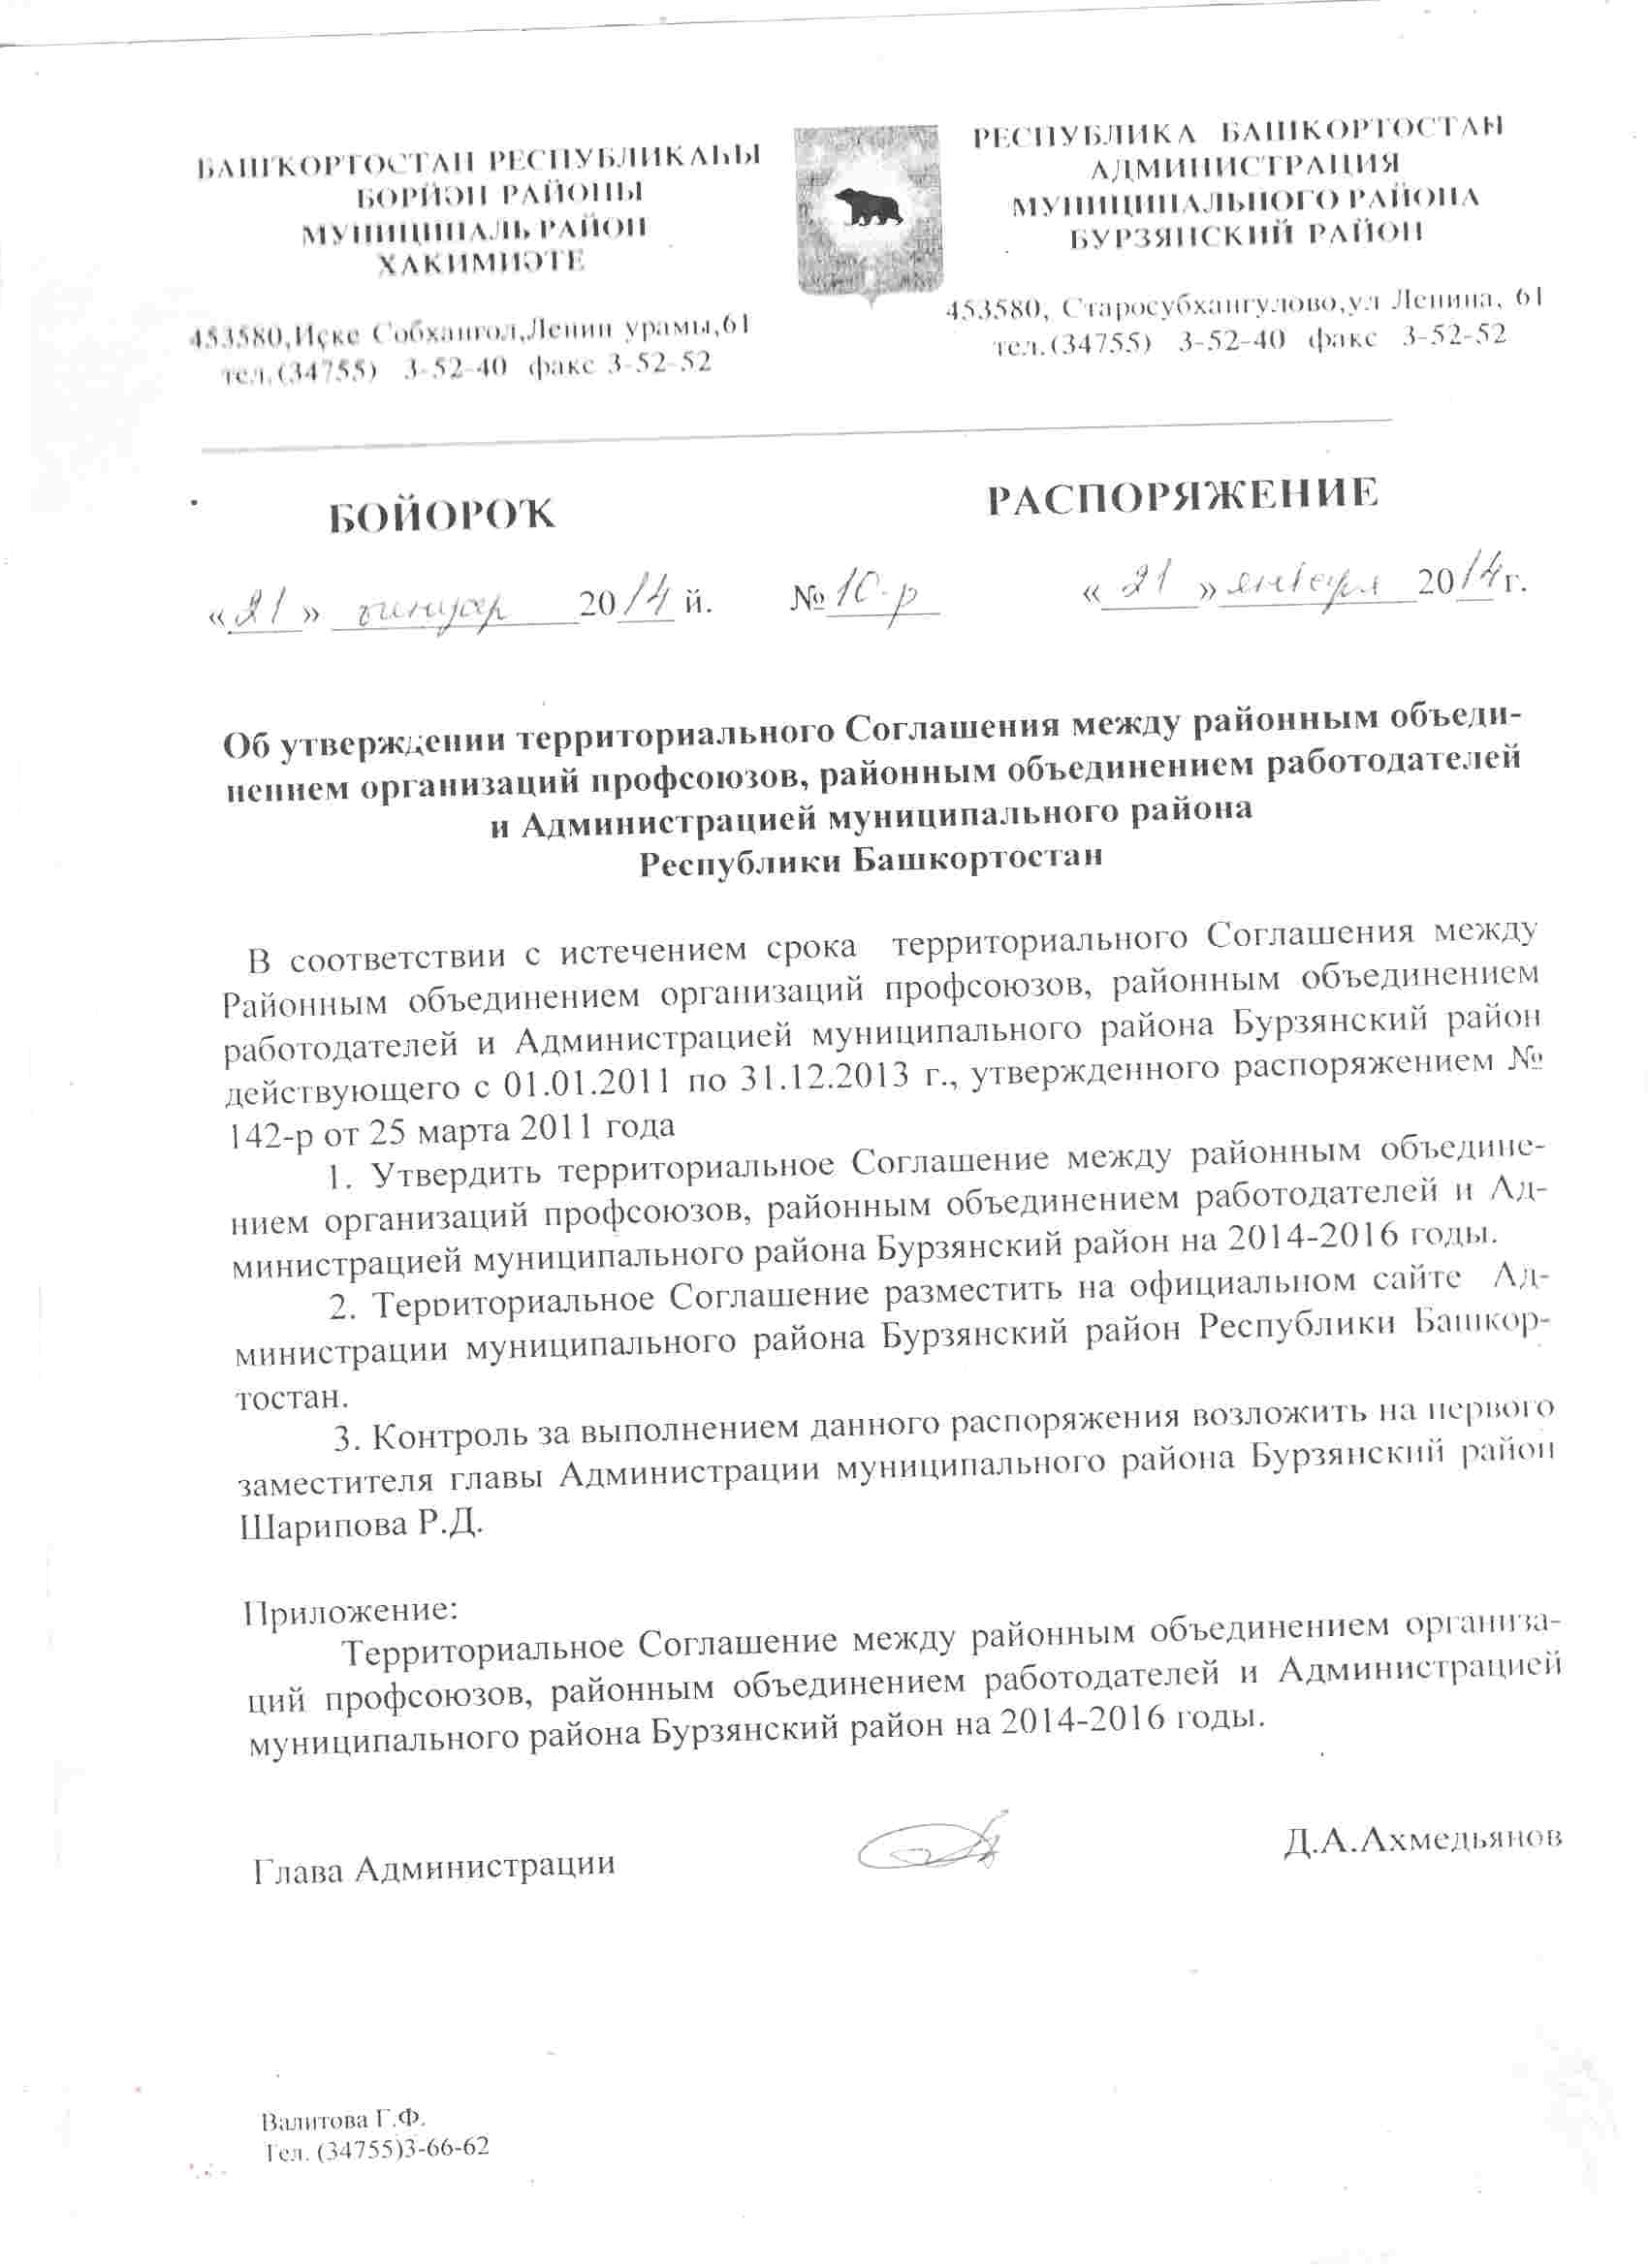 Должностная инструкция работников администрации сельского поселения в республике башкортостан